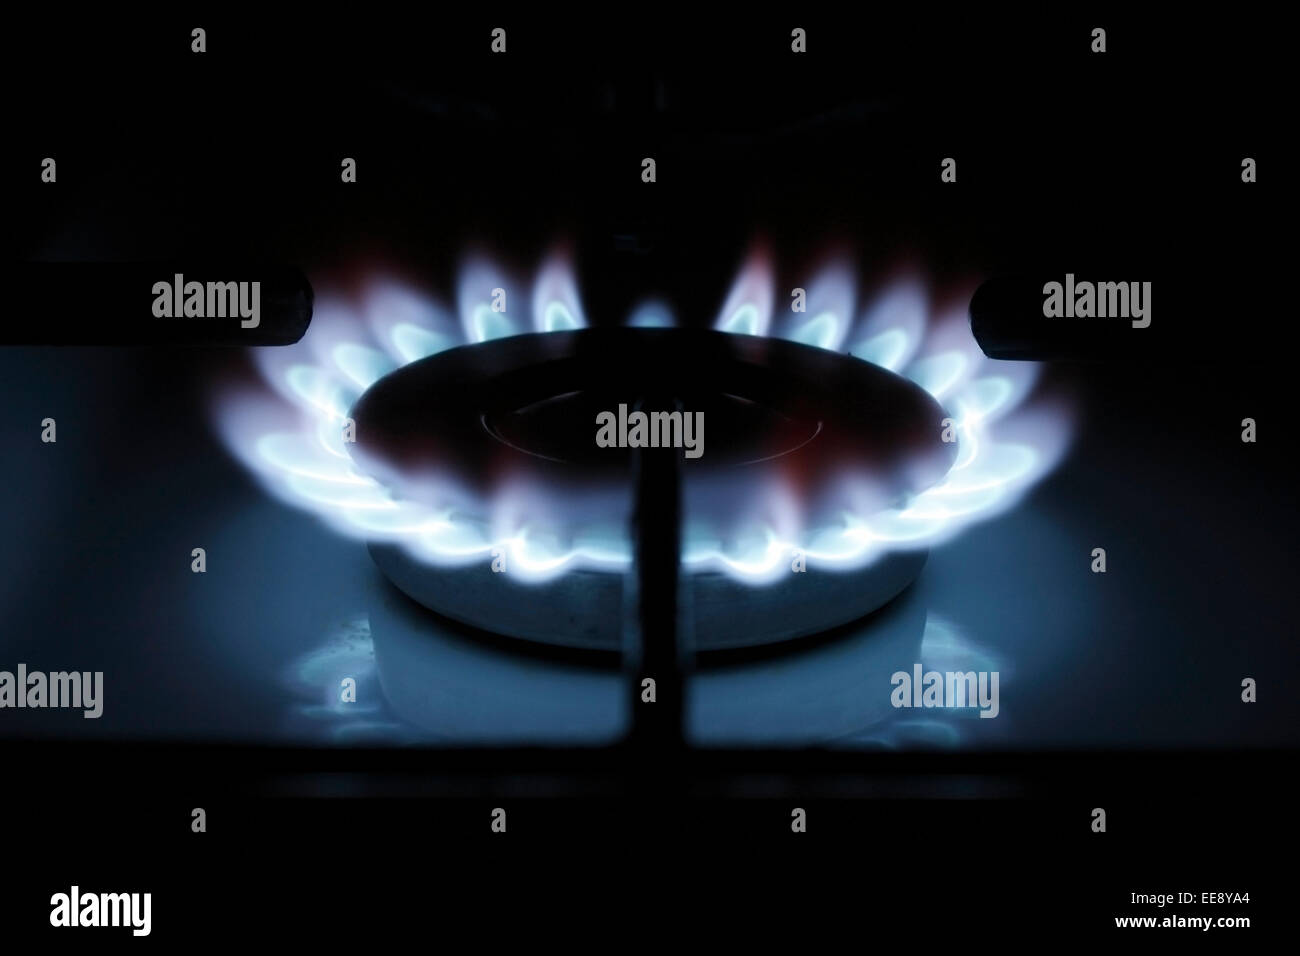 Flammes de gaz sur un anneau de gaz, cuisinière de cuisine utilisation de l'alimentation en gaz résiduaire de combustible fossile Banque D'Images